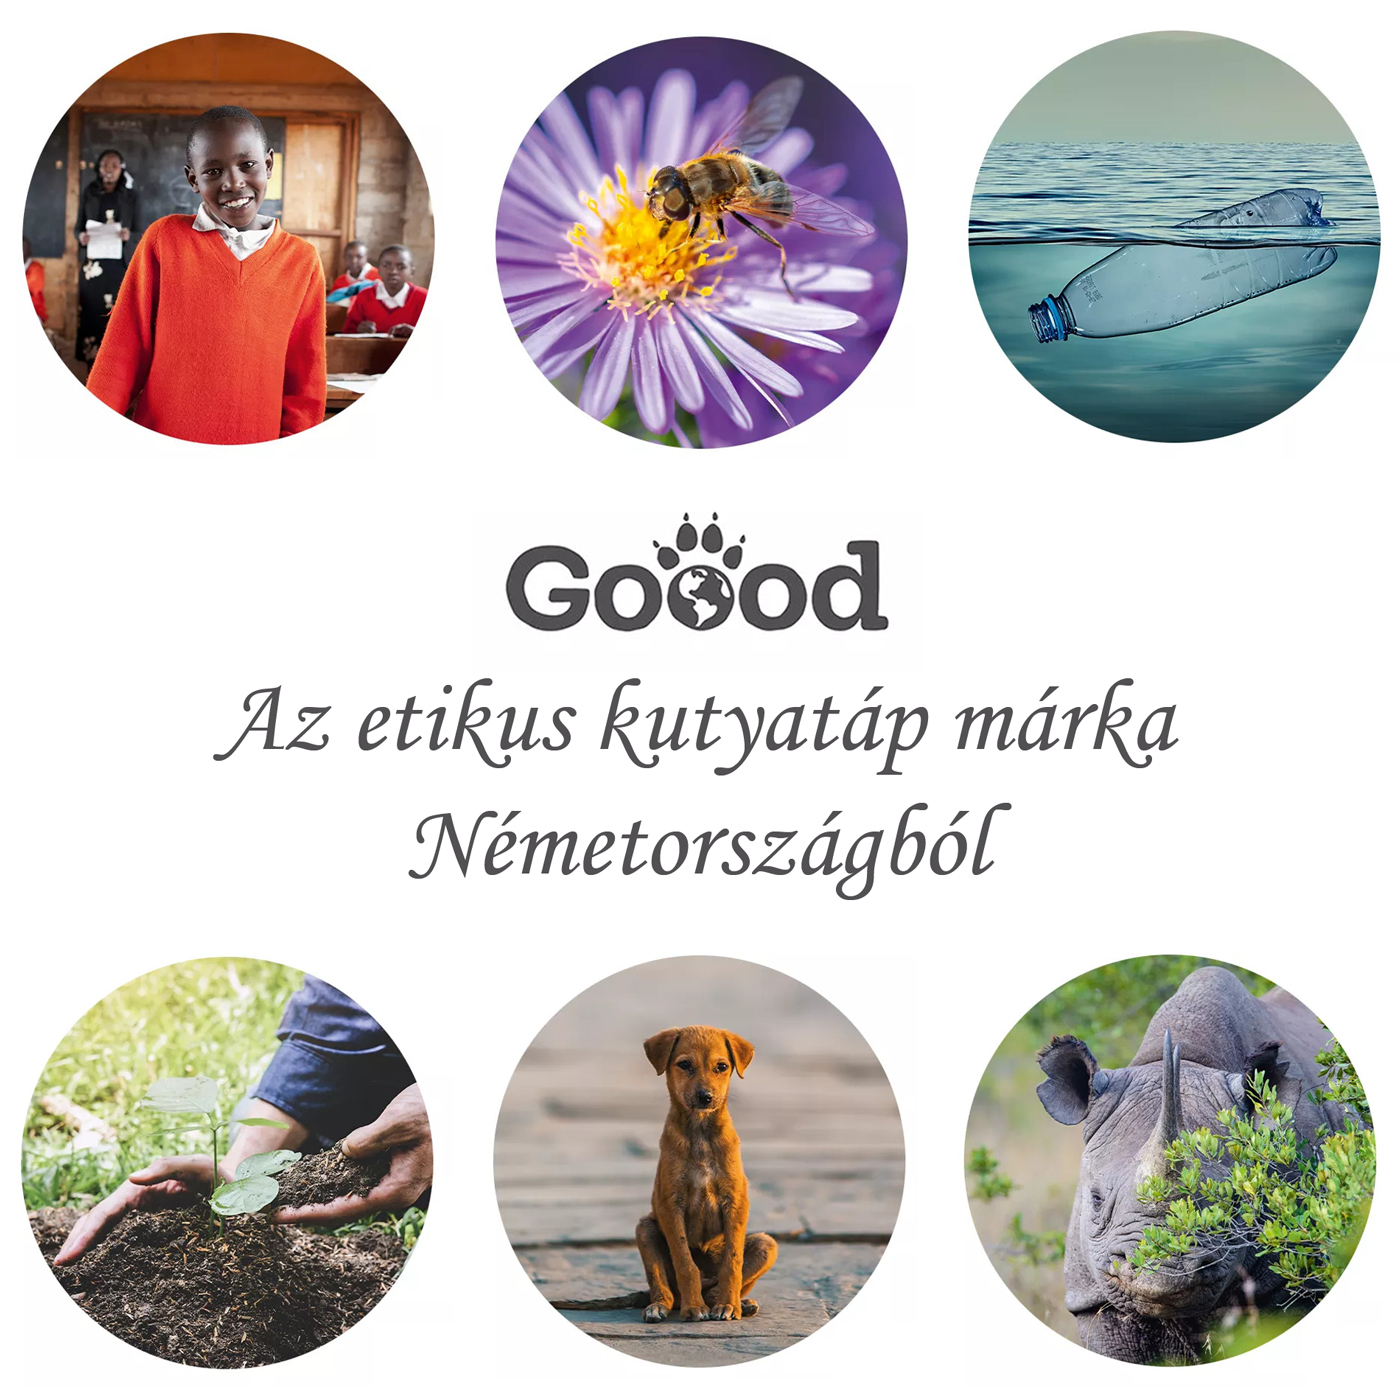 Goood, az etikus kutyatáp márka Németországból